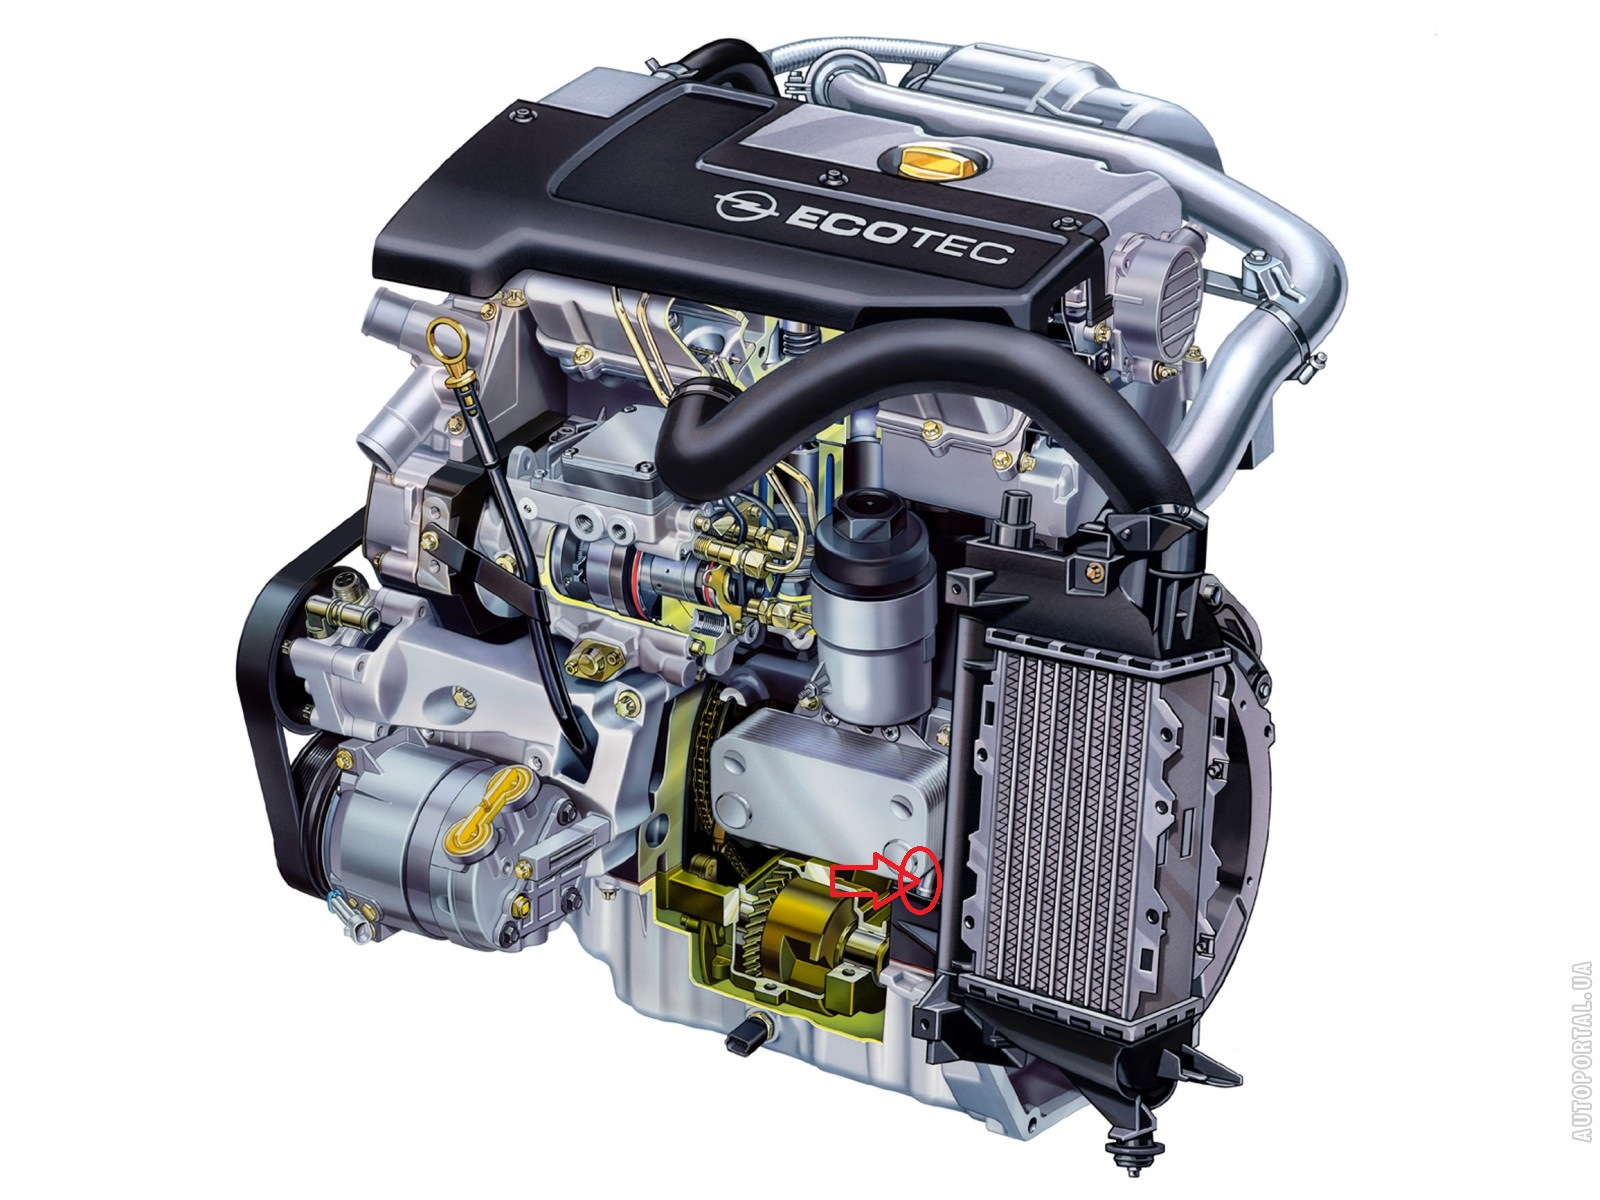 Opel 2.0 dti. Opel Motor 2.2. Opel ECOTEC 2.2. Opel 2.0 DTI двигатель. Двигатель Экотек Опель дизель 2.0.